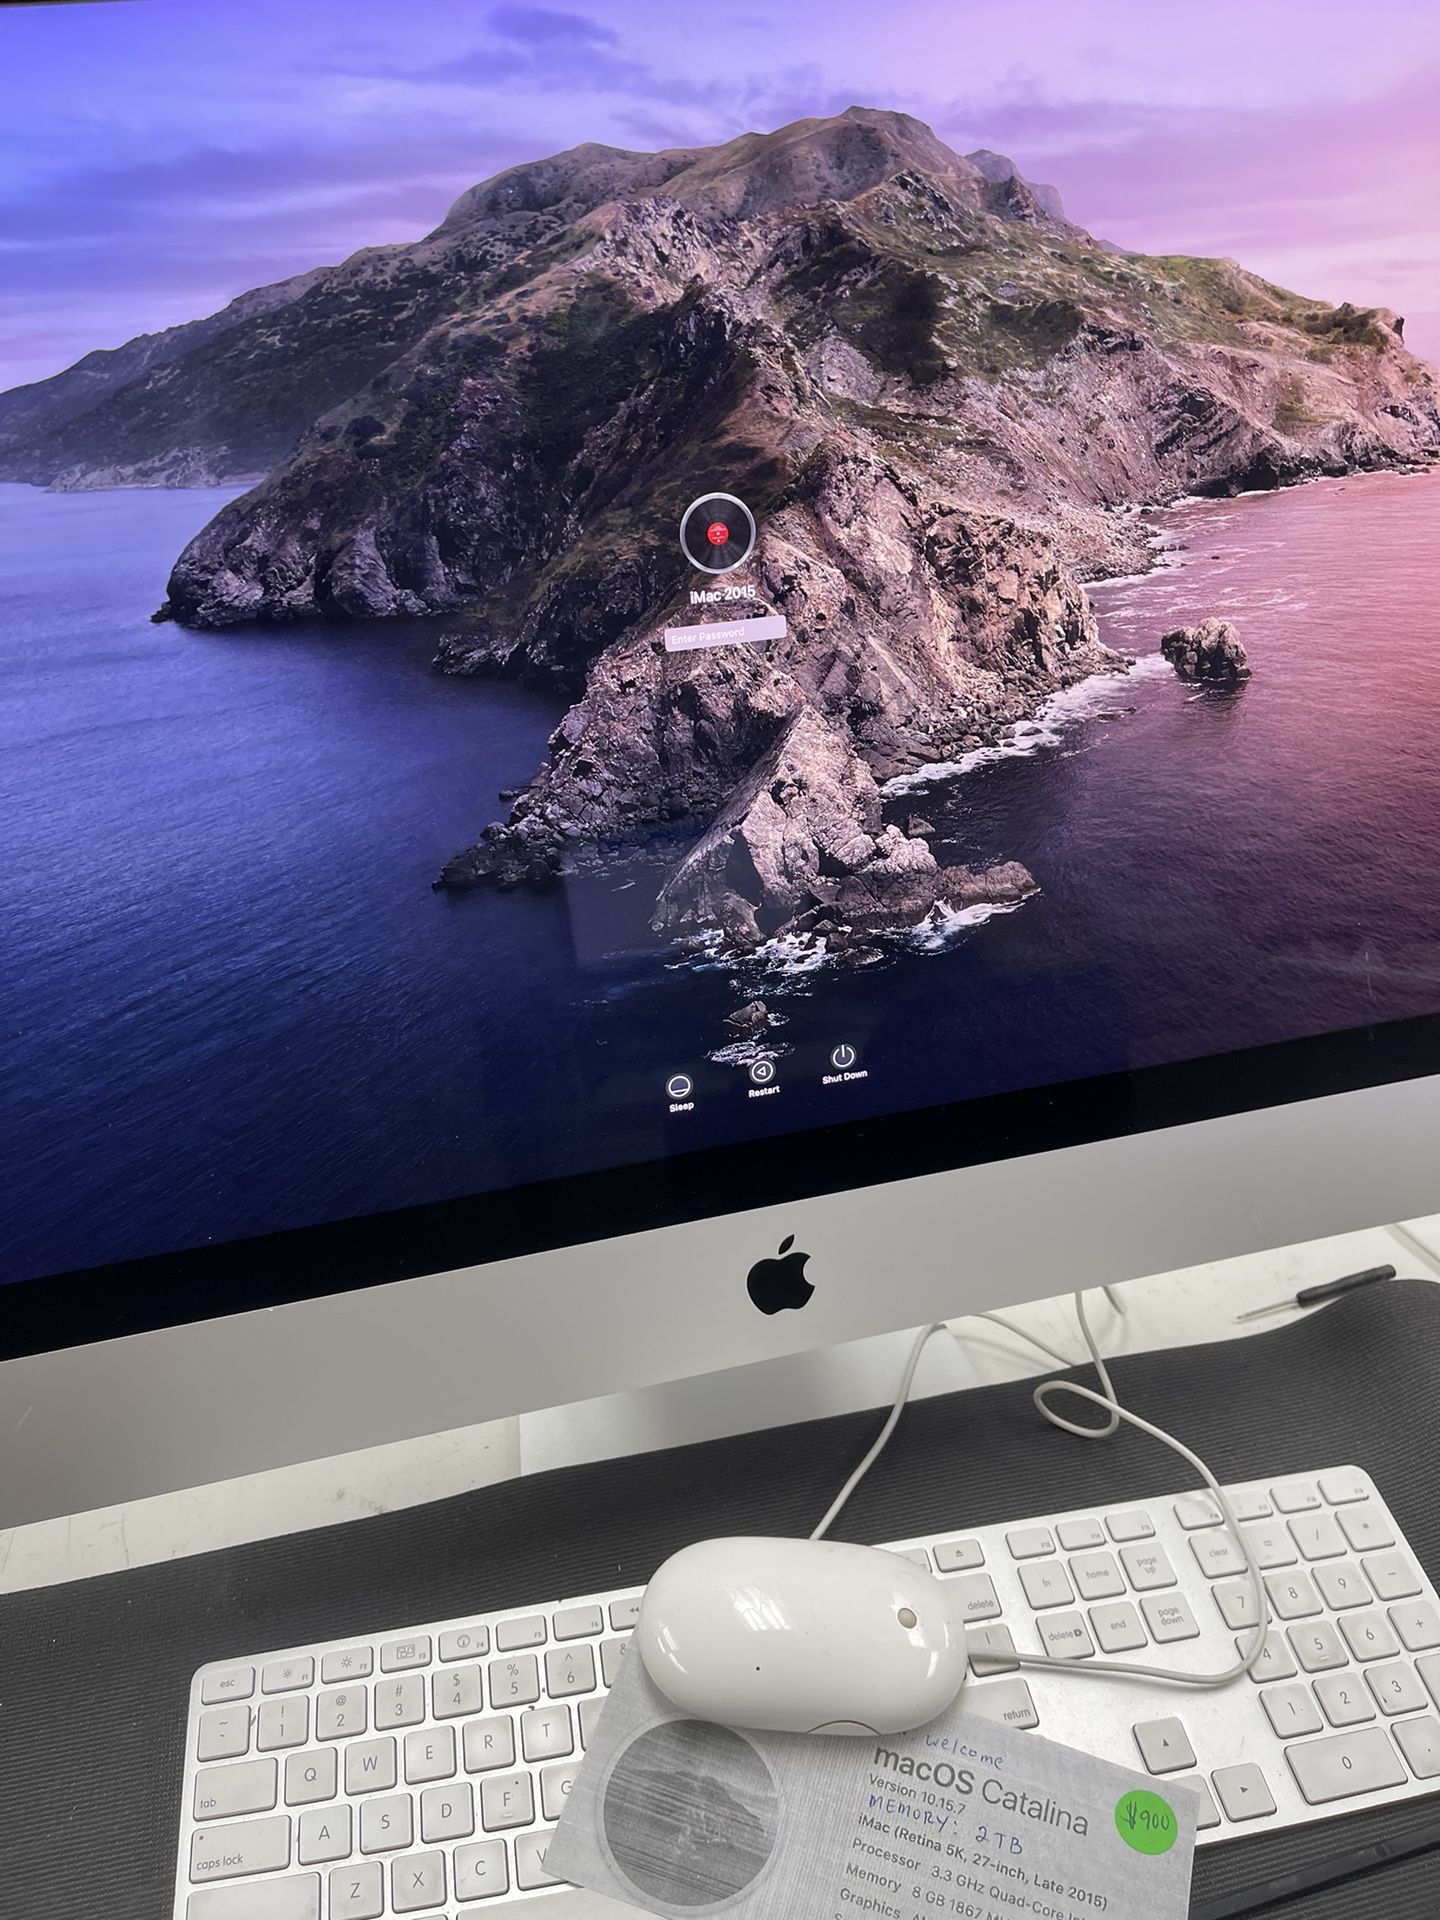 iMac (Retina 5K, 27-Inch, Late 2015) 2TB memory, with 30 day warranty